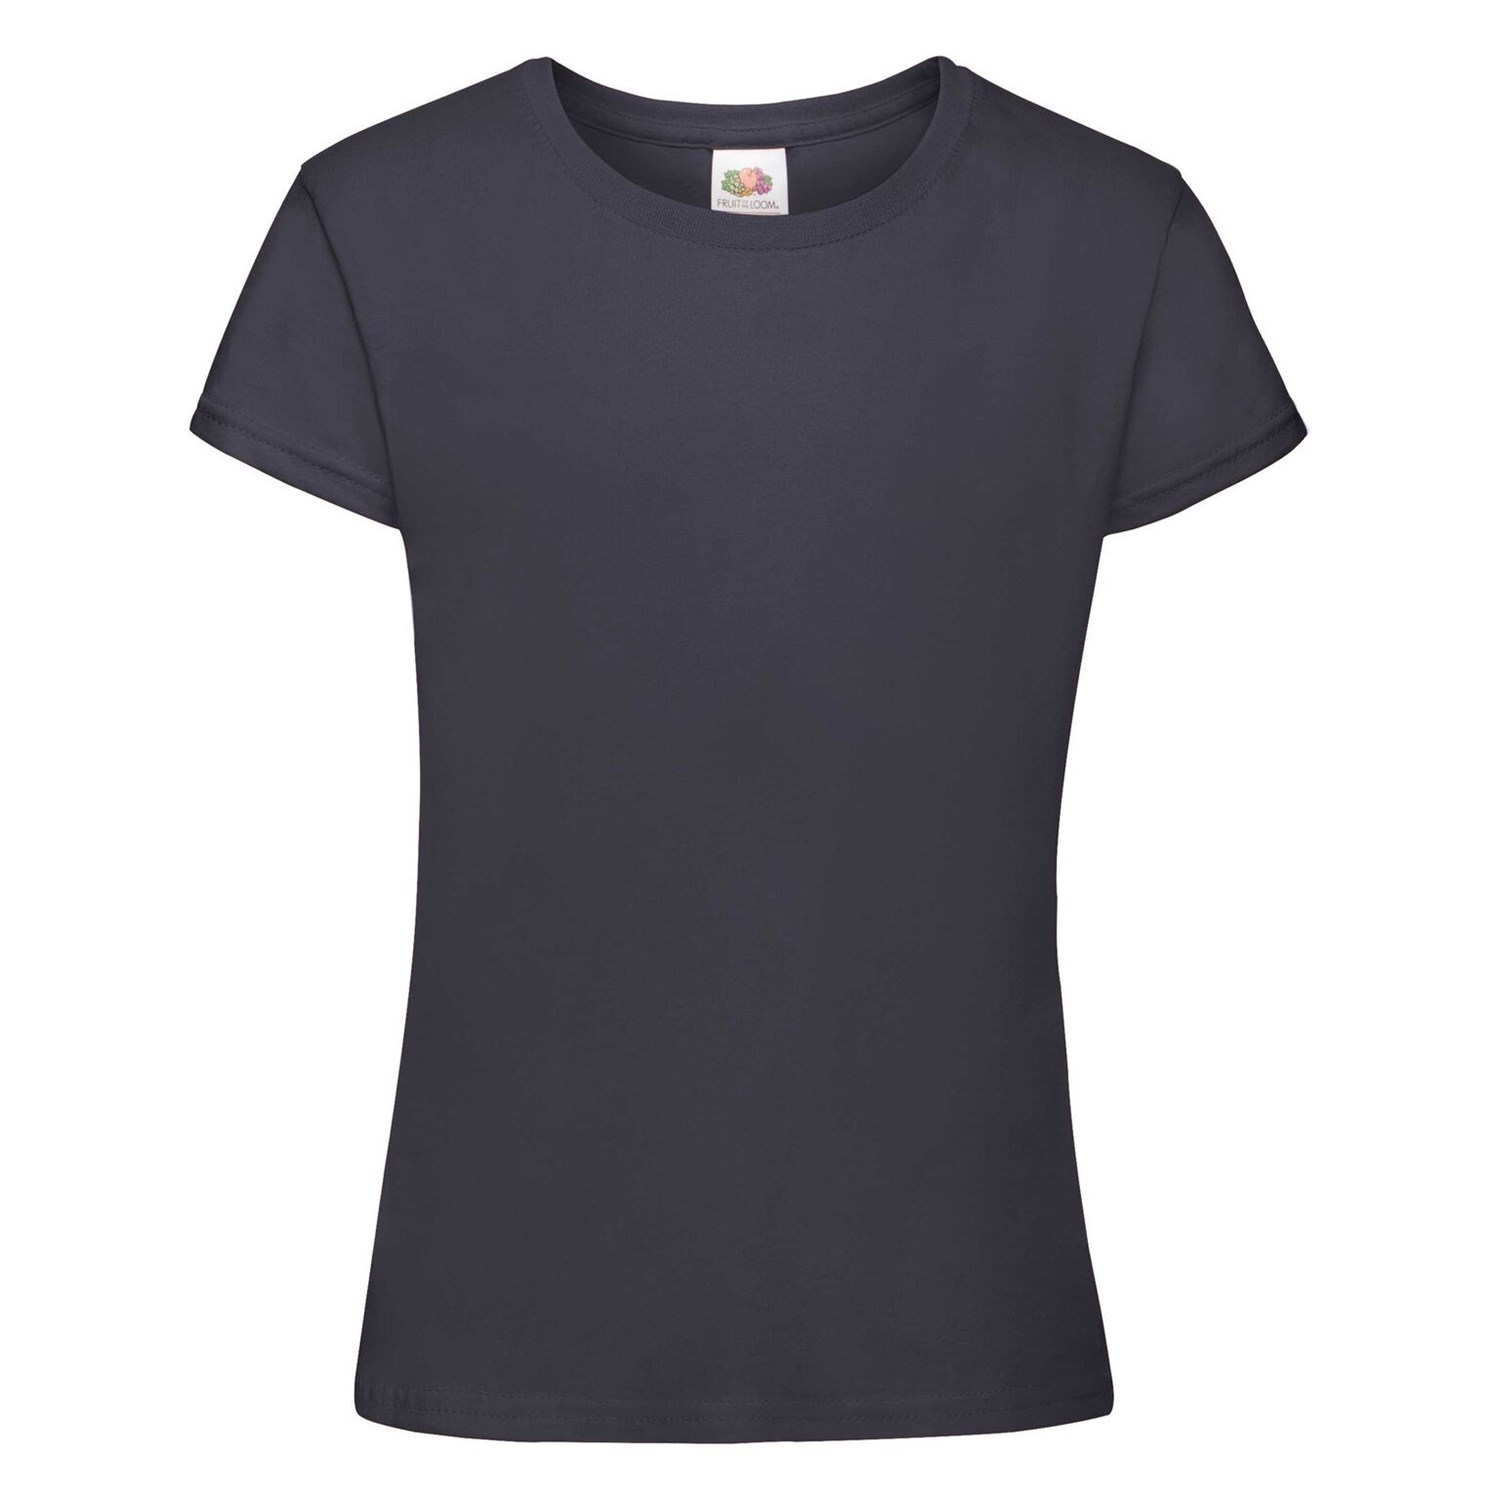 Girls' T-shirt Sofspun 610150 100% cotton 160g/165g